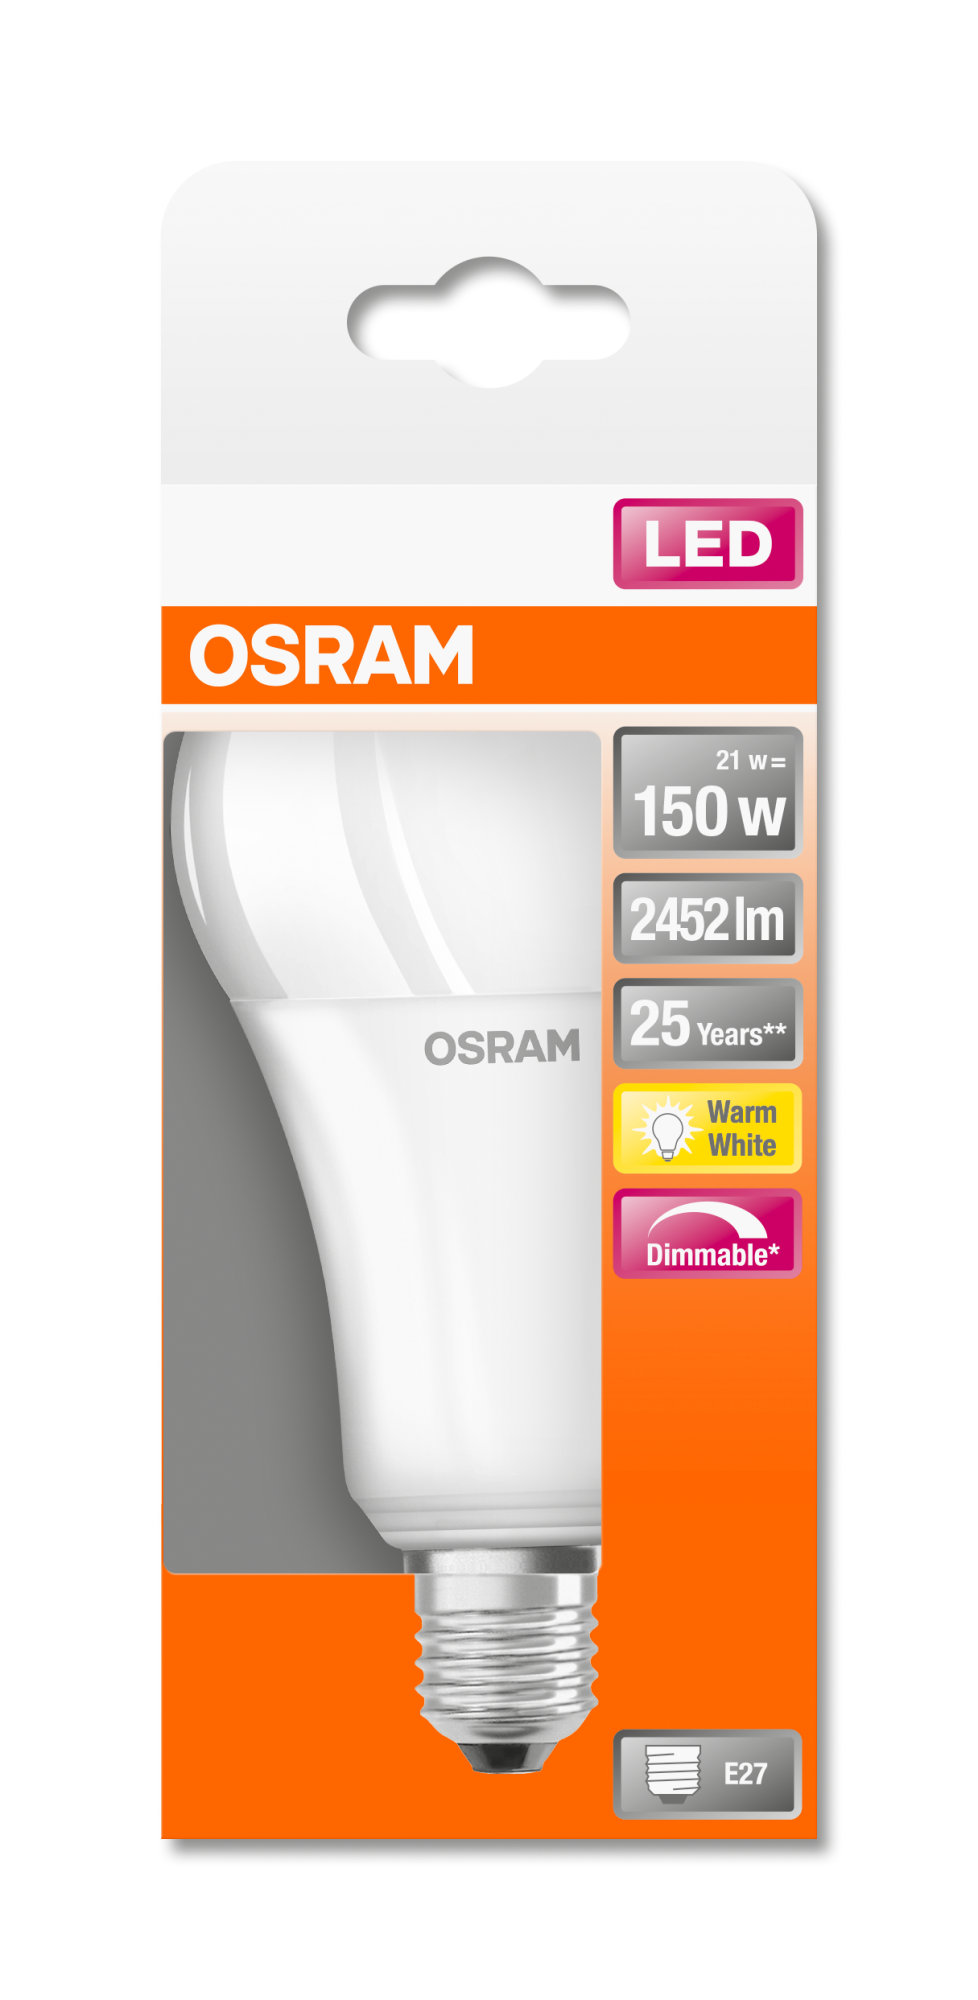 Bec Osram LED SST DIM CLA150 AD 21W 827 mat E27 2452lm 2700K